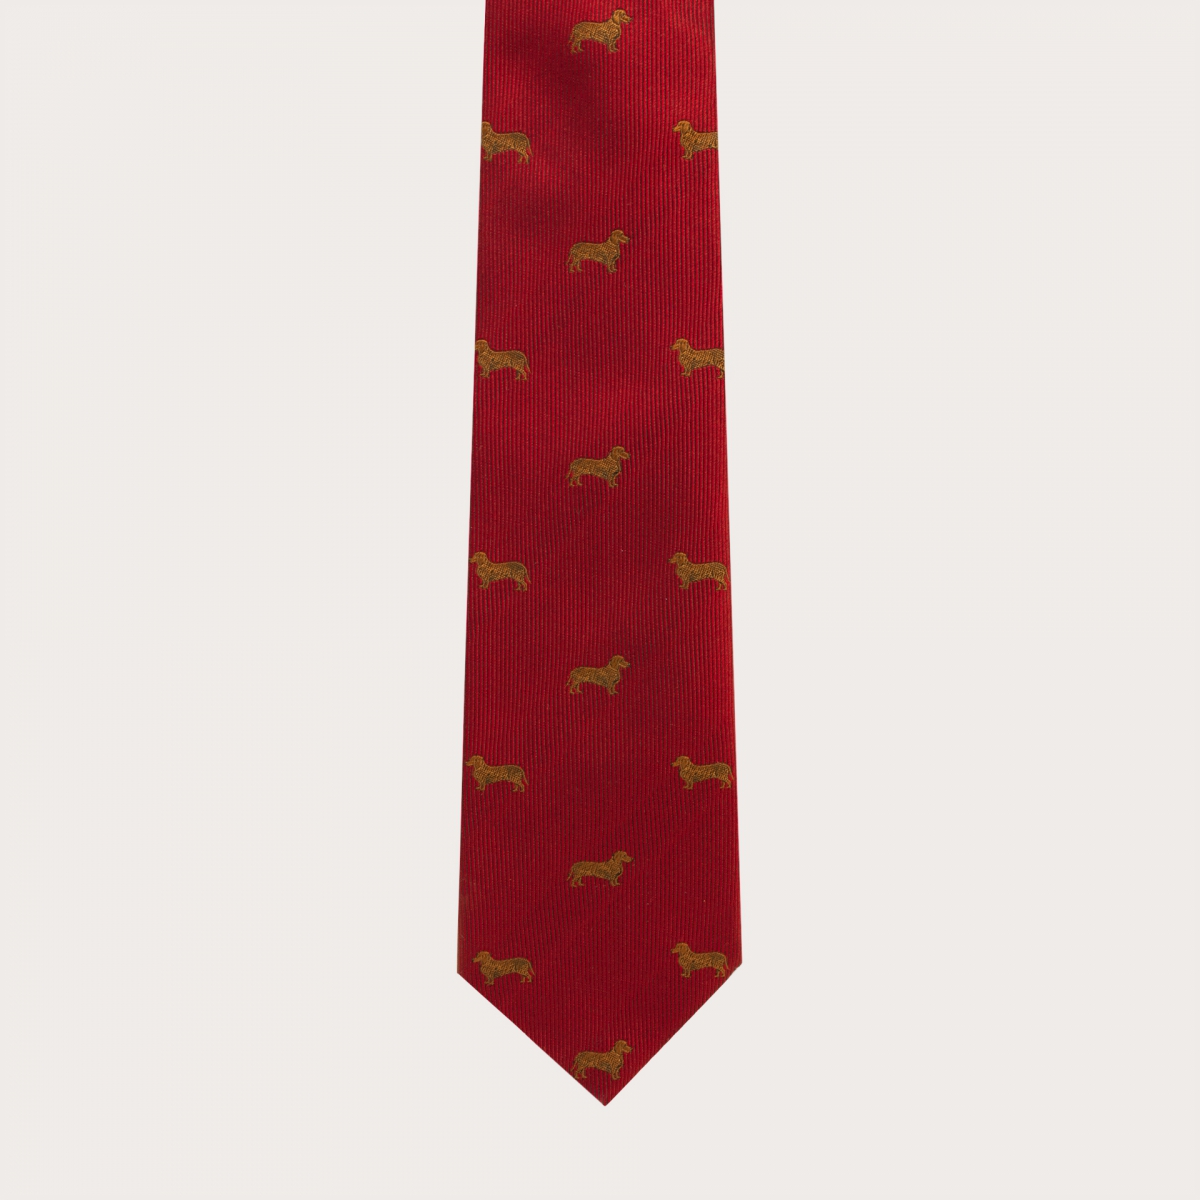 BRUCLE Corbata de seda jacquard, estampado de perros dachshund rojo